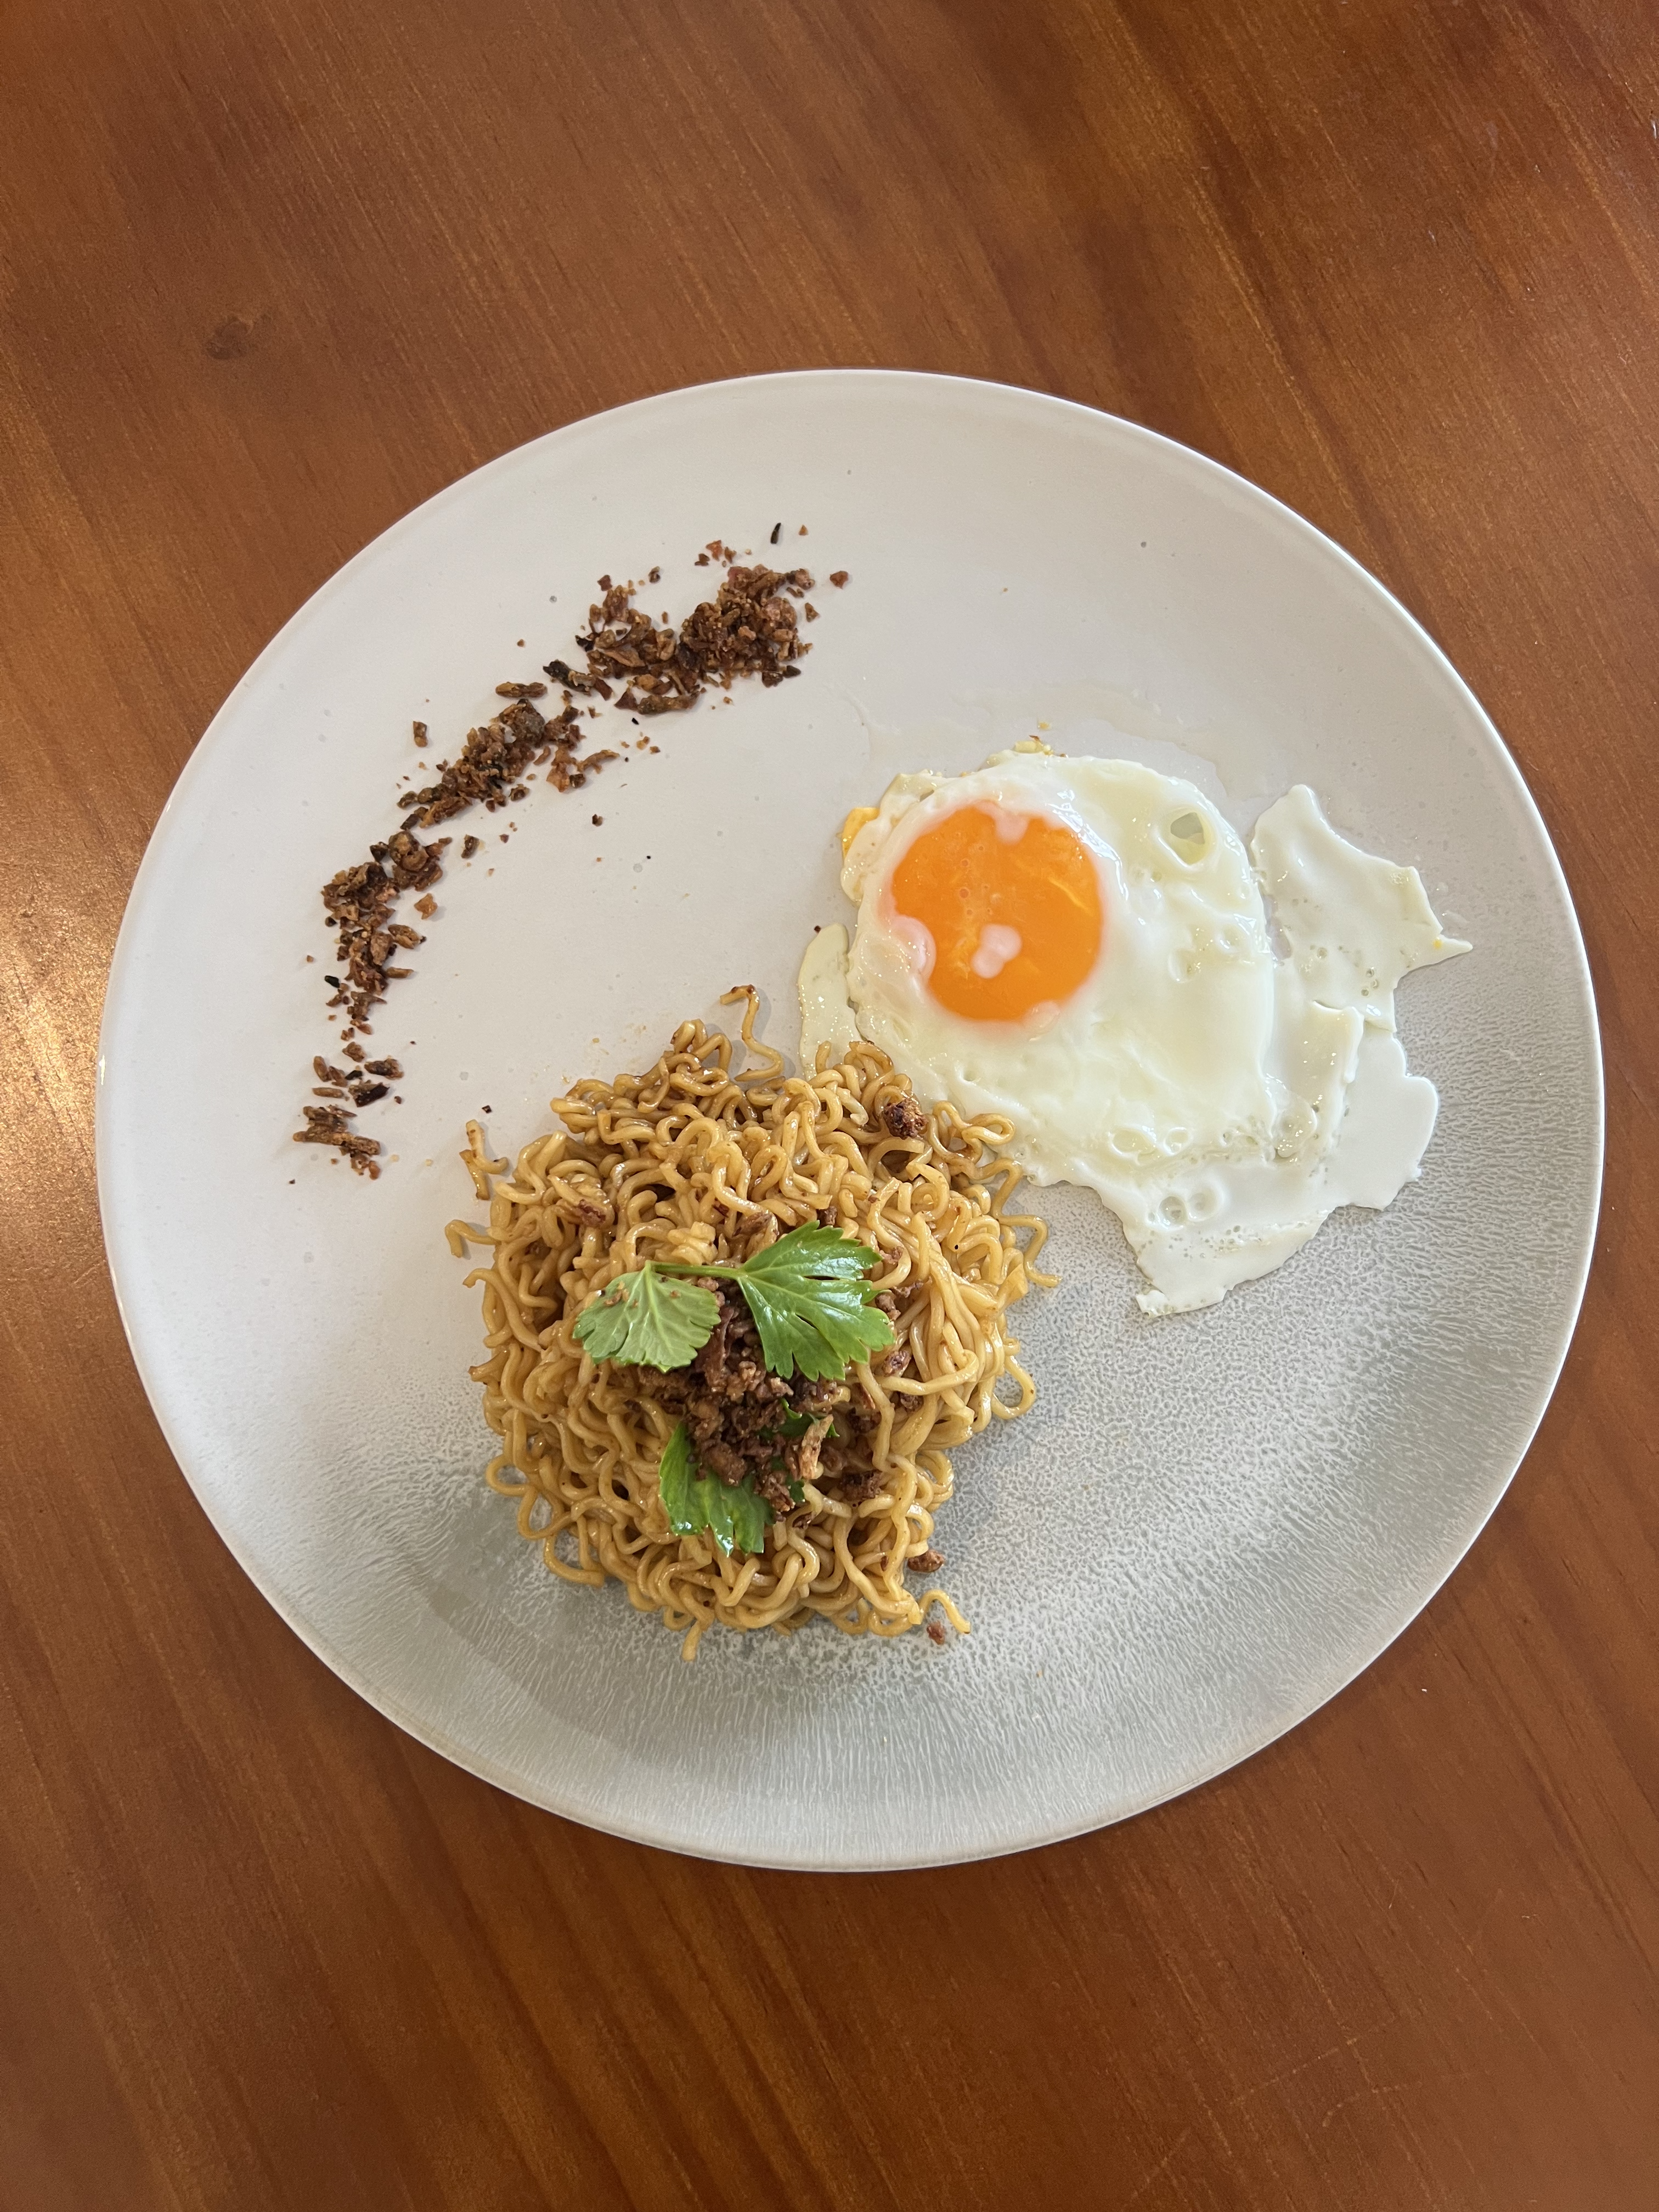 Mi Sedaap Goreng Asli plated with an egg